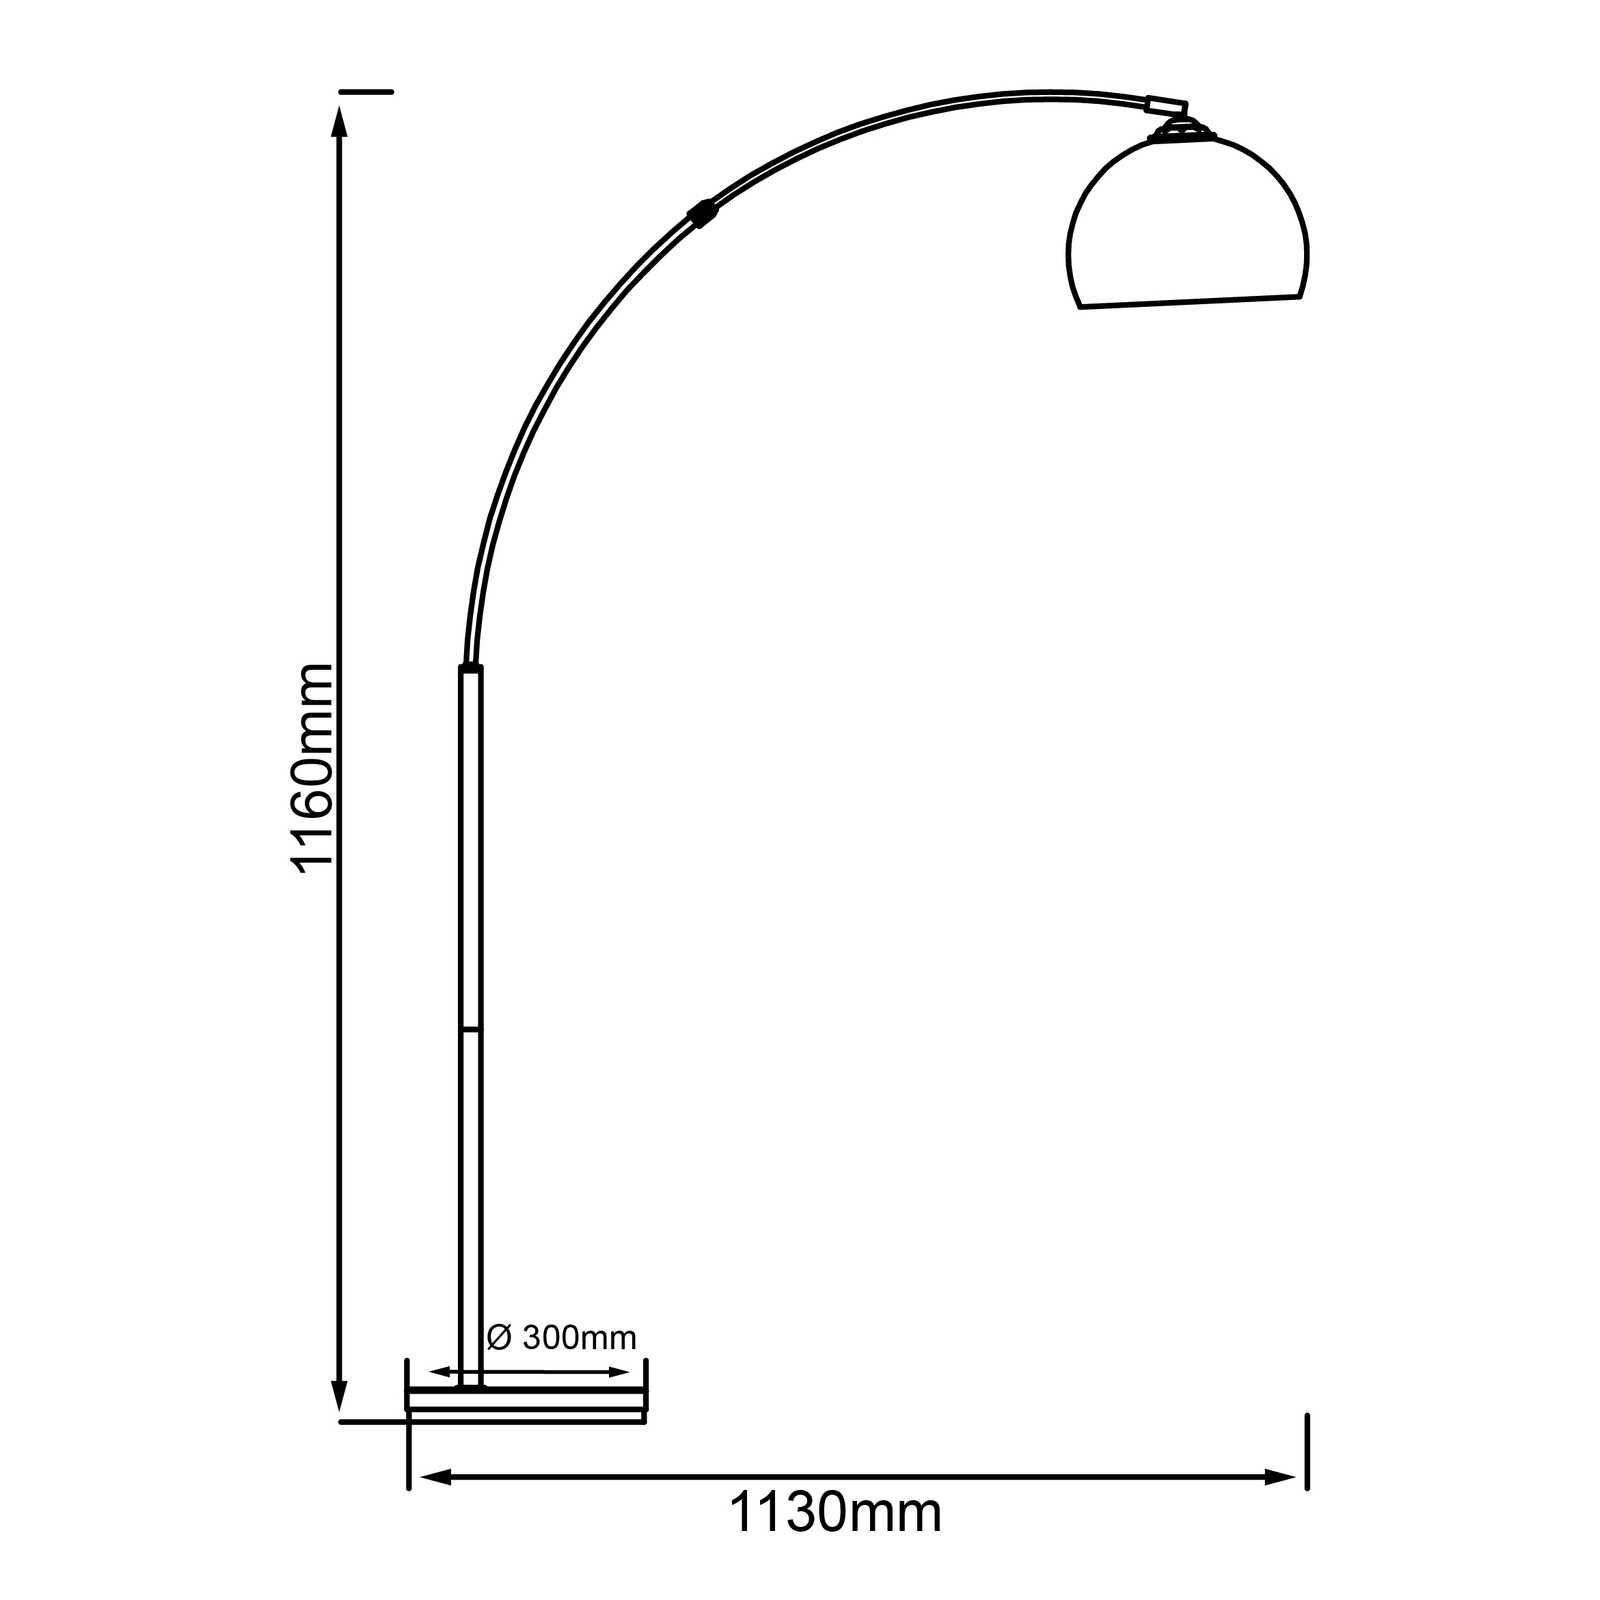             Lámpara de pie arco de plástico - Swantje - Metallic
        